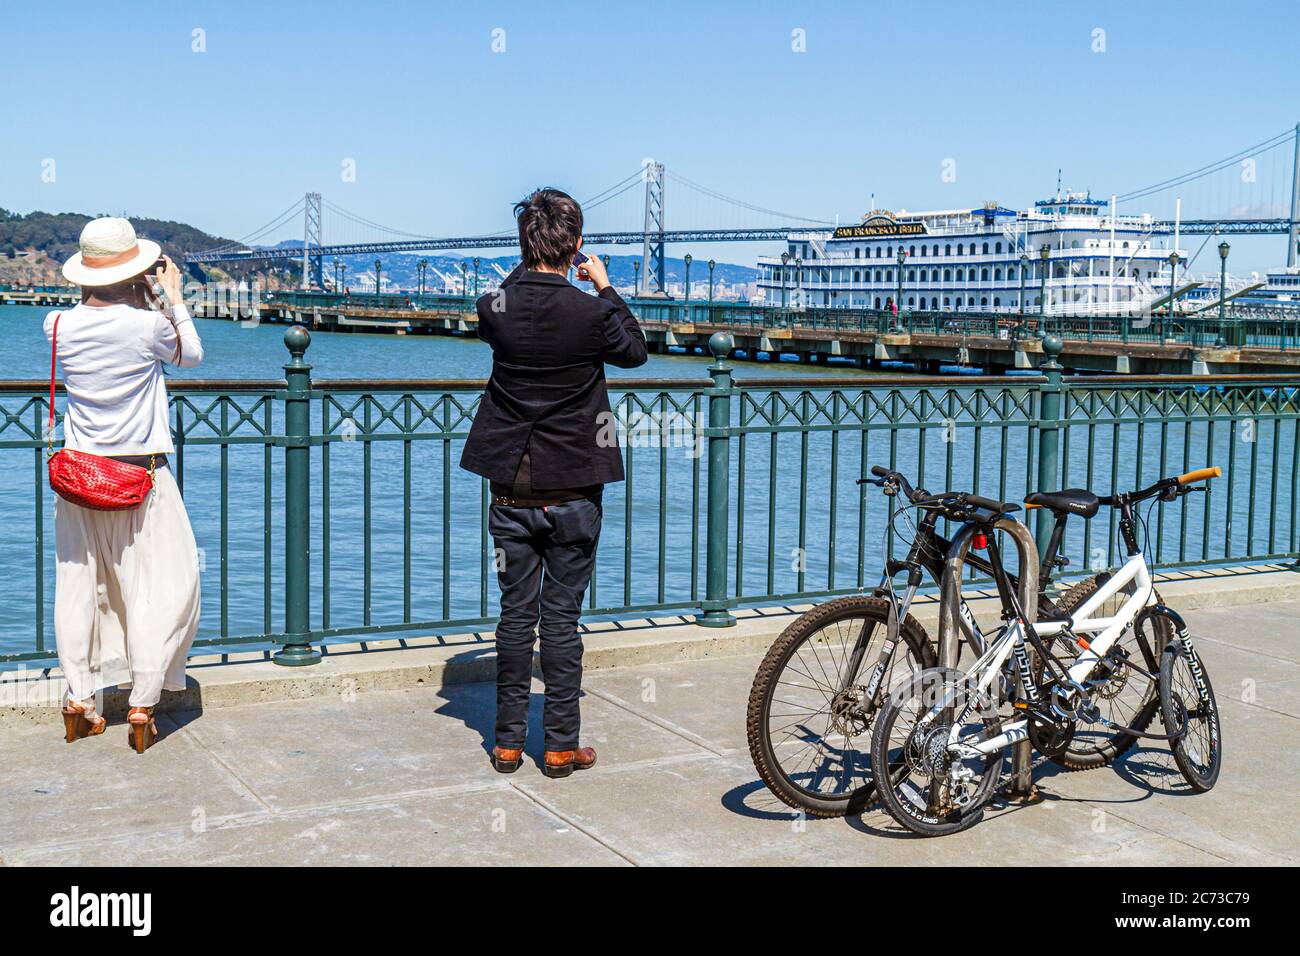 San Francisco California, l'Embarcadero, San Francisco Bay Water, Bay Water Trail, passeggiata pubblica, area ricreativa sul mare, immigrazione etnica asiatica asiatica Foto Stock